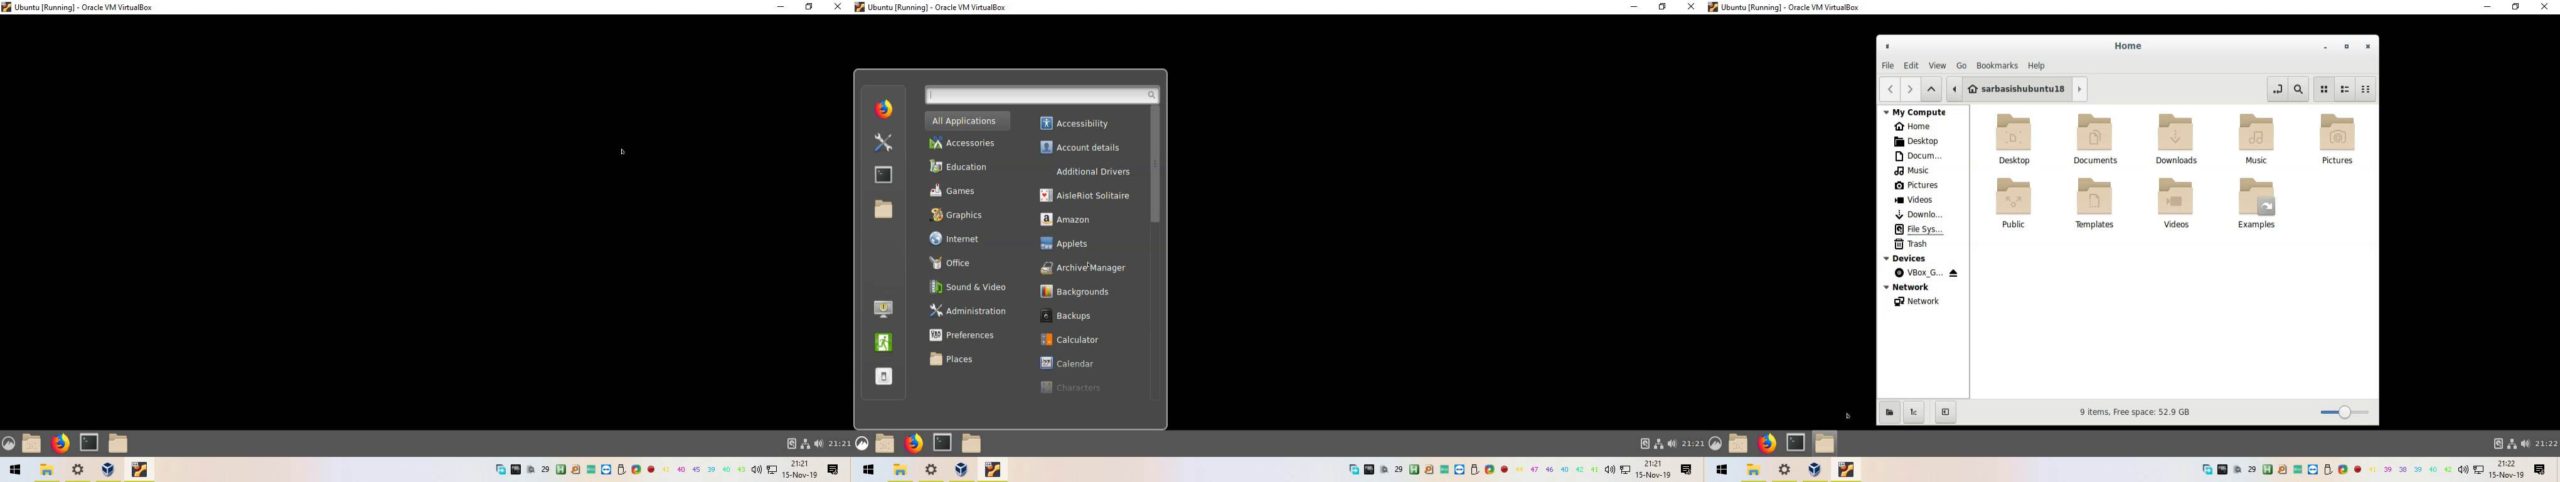 few screenshots of Ubuntu 18.04 LTS